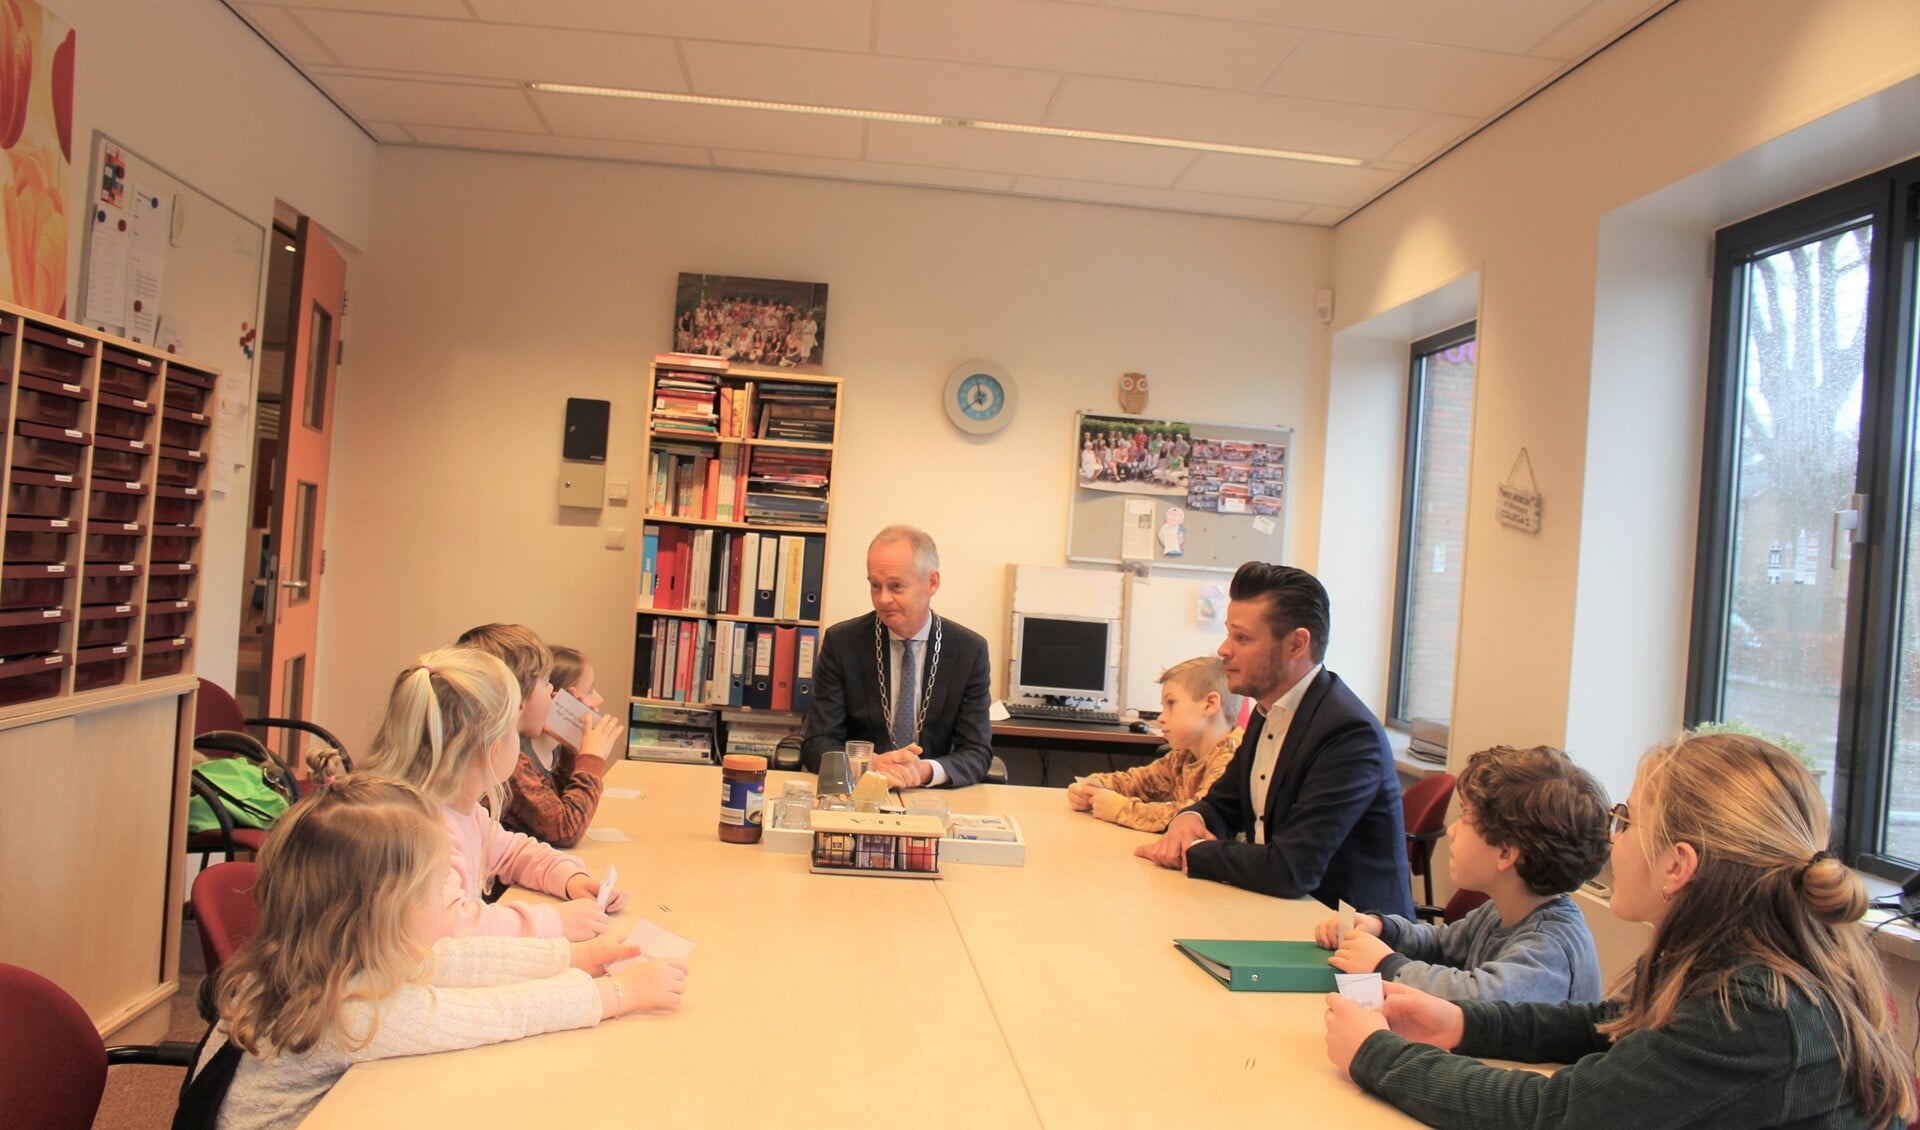 De burgemeester praat met een aantal leerlingen en locatieleider Michiel van den Brink.